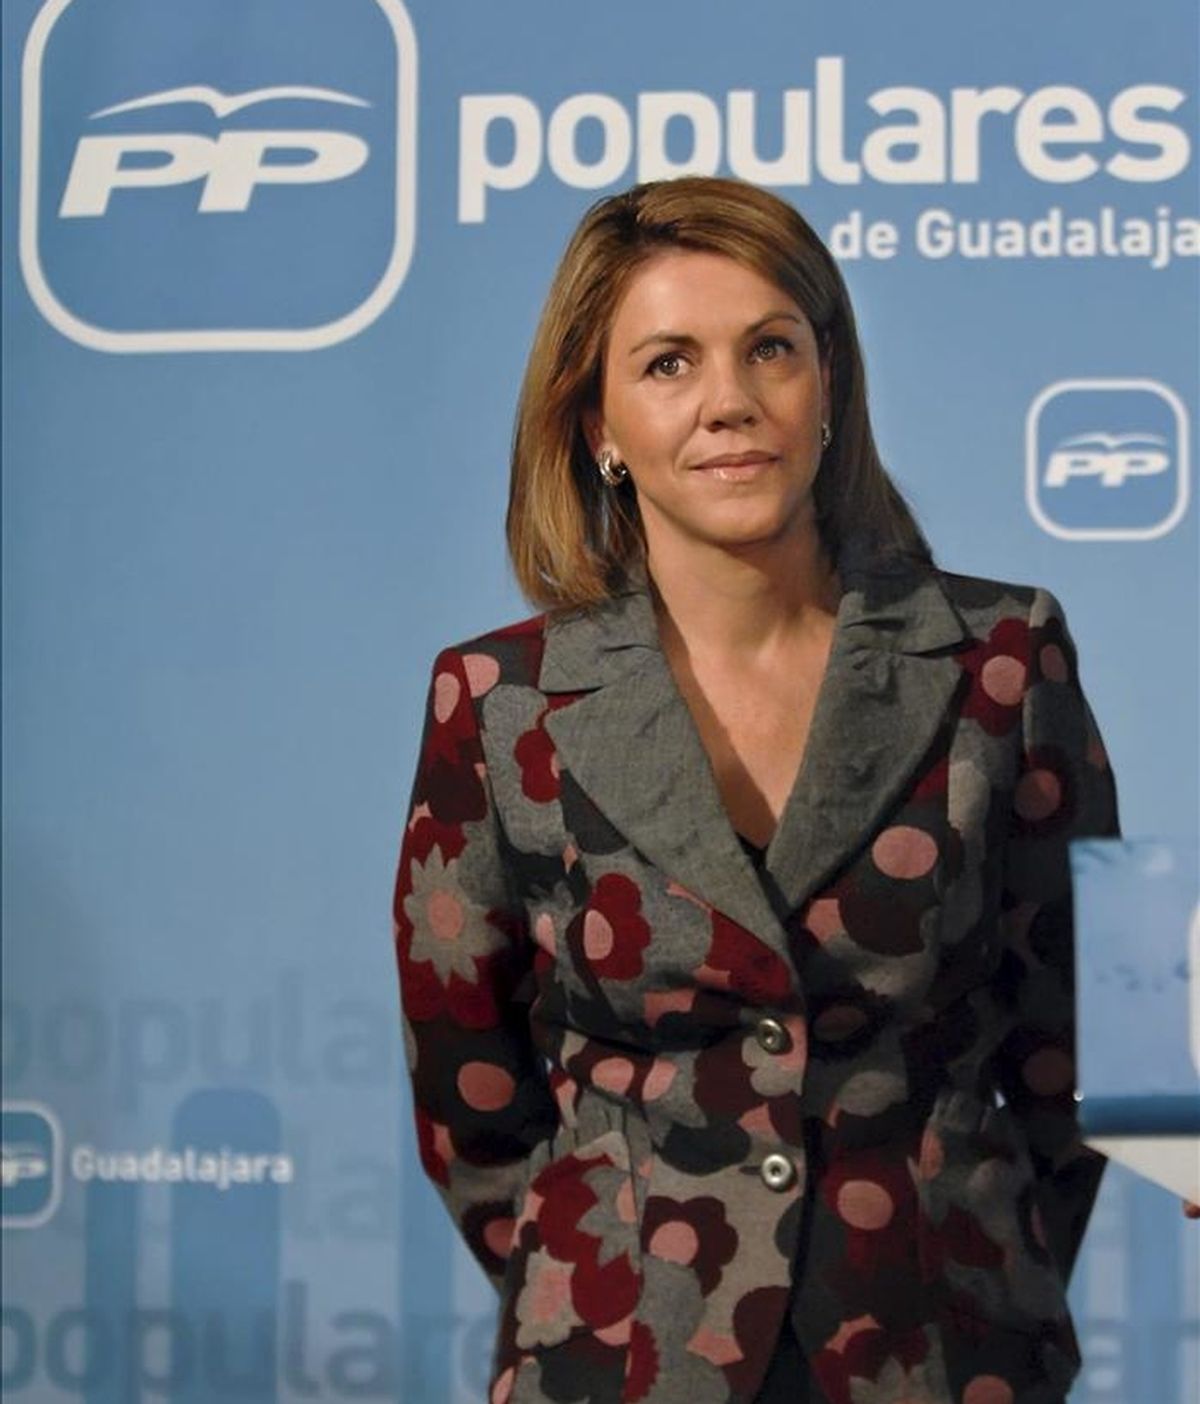 La secretaria general del PP y candidata a la Presidencia de Castilla-La Mancha en las elecciones autonómicas, María Dolores de Cospedal. EFE/Archivo